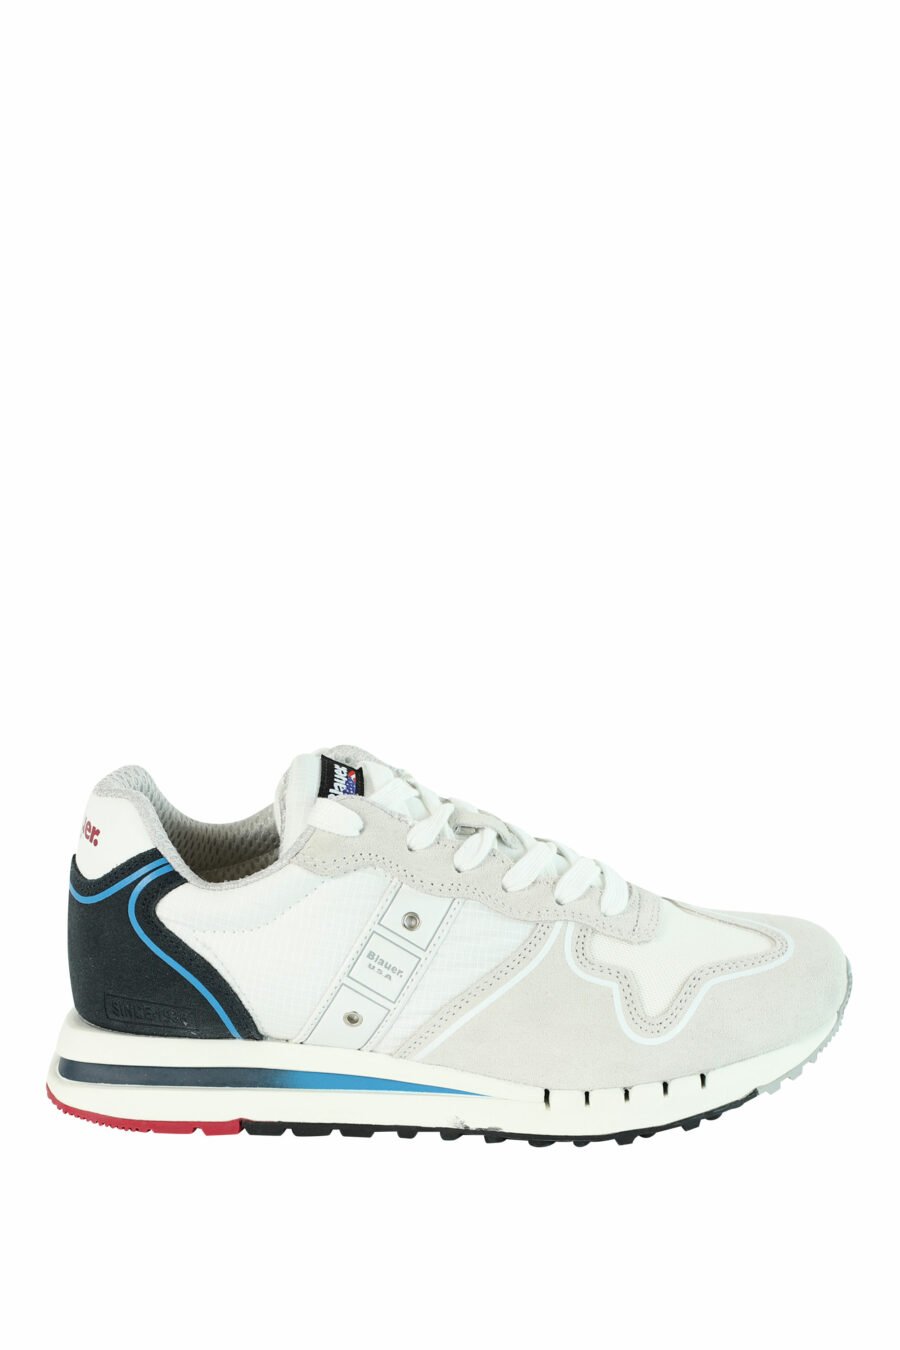 Zapatillas "QUARTZ" blancas con azul y detalles rojos - 8058156499522